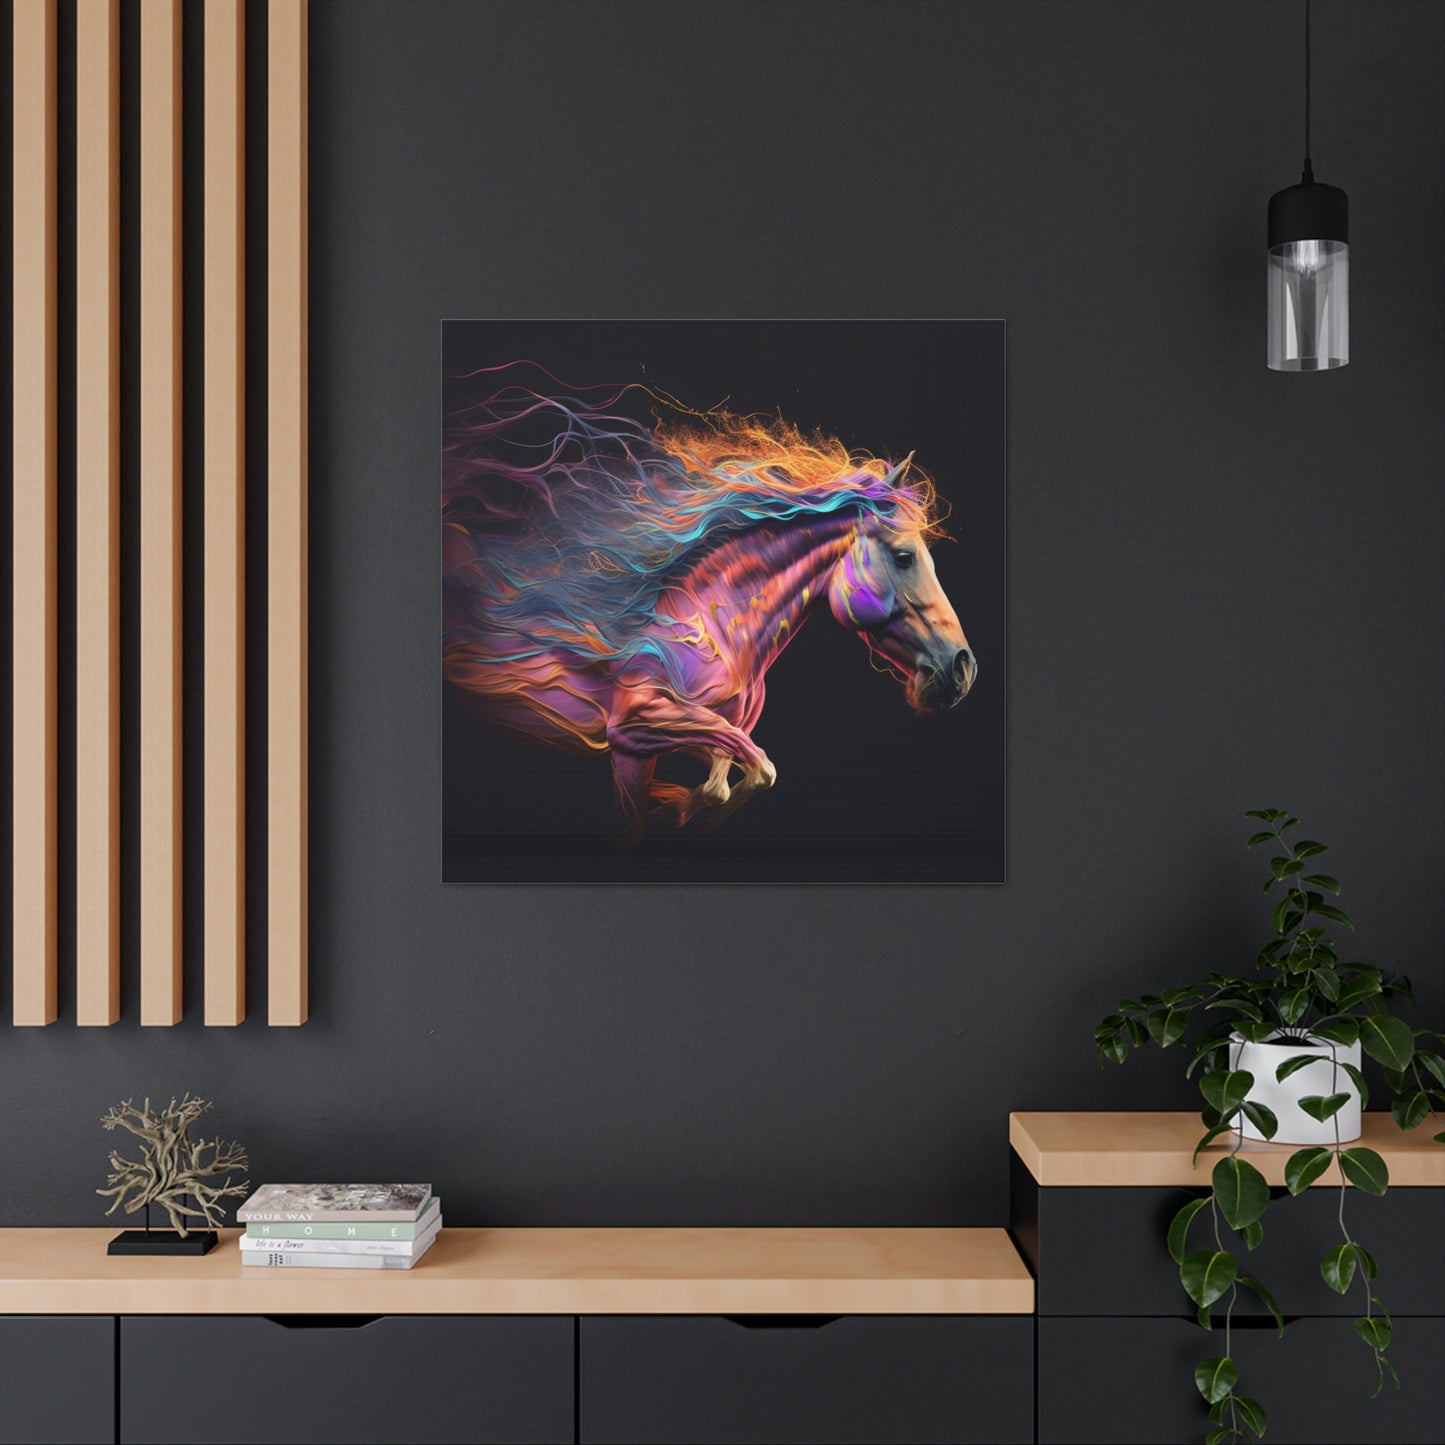 Canvas Gallery Wraps Florescent Horses Mane 2